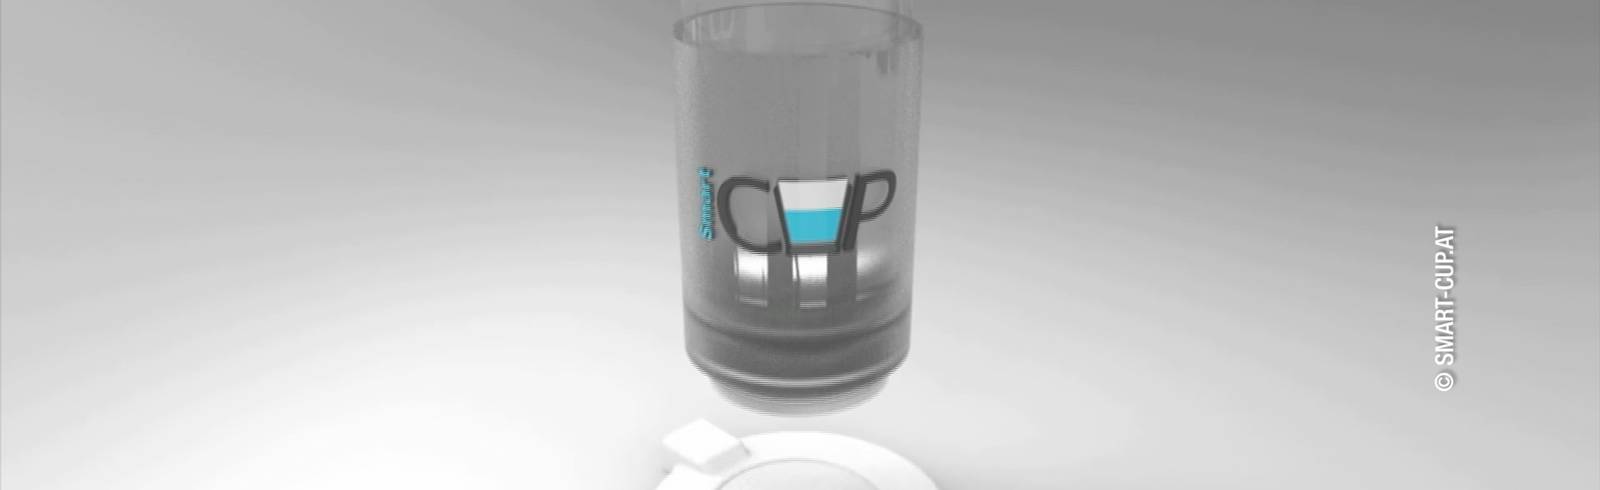 Smart-Cup: HTL Schüler revolutionieren das Wasser-Glas